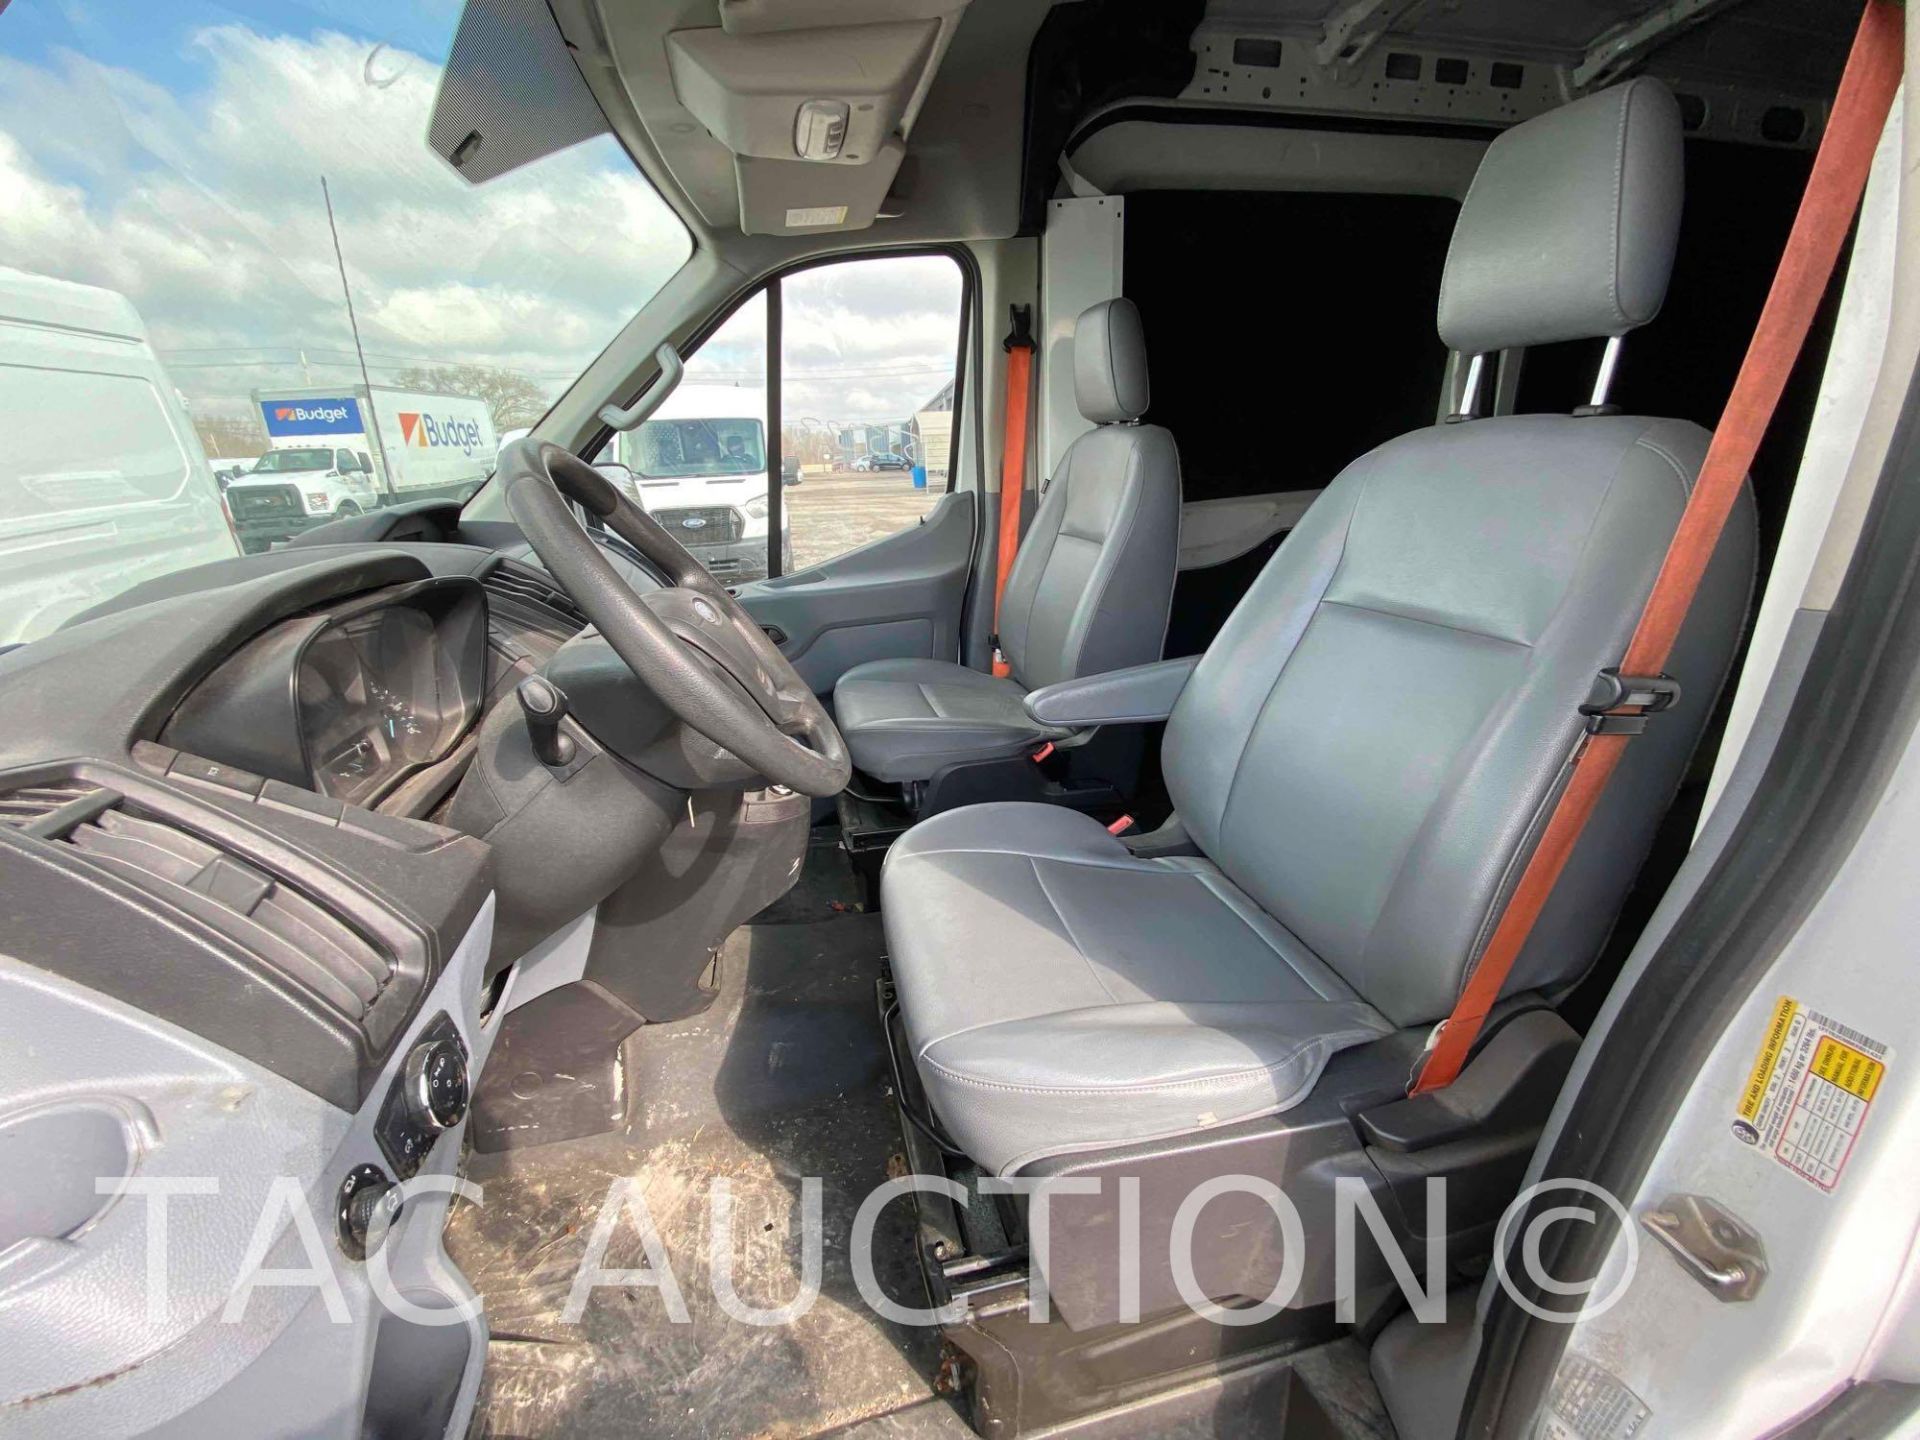 2019 Ford Transit 150 Cargo Van - Image 31 of 48